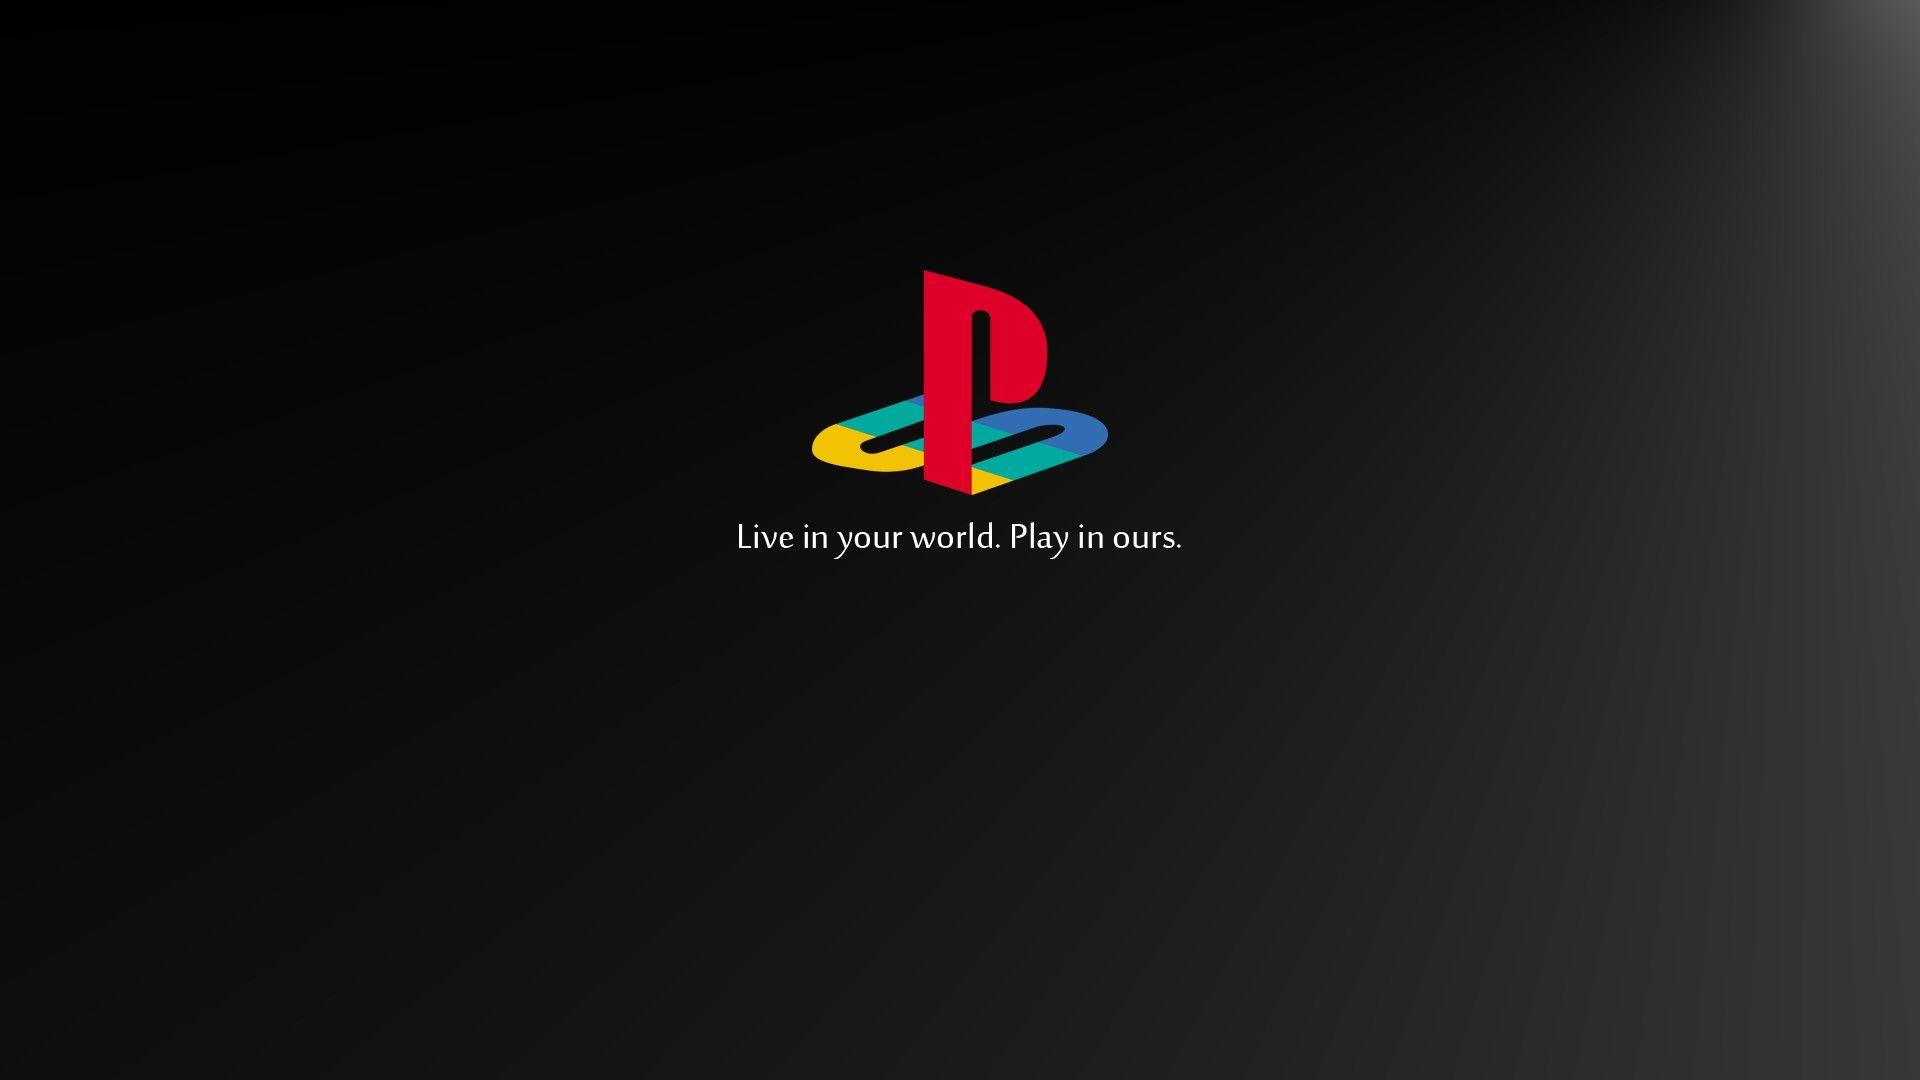 Sony PlayStation Wallpaper